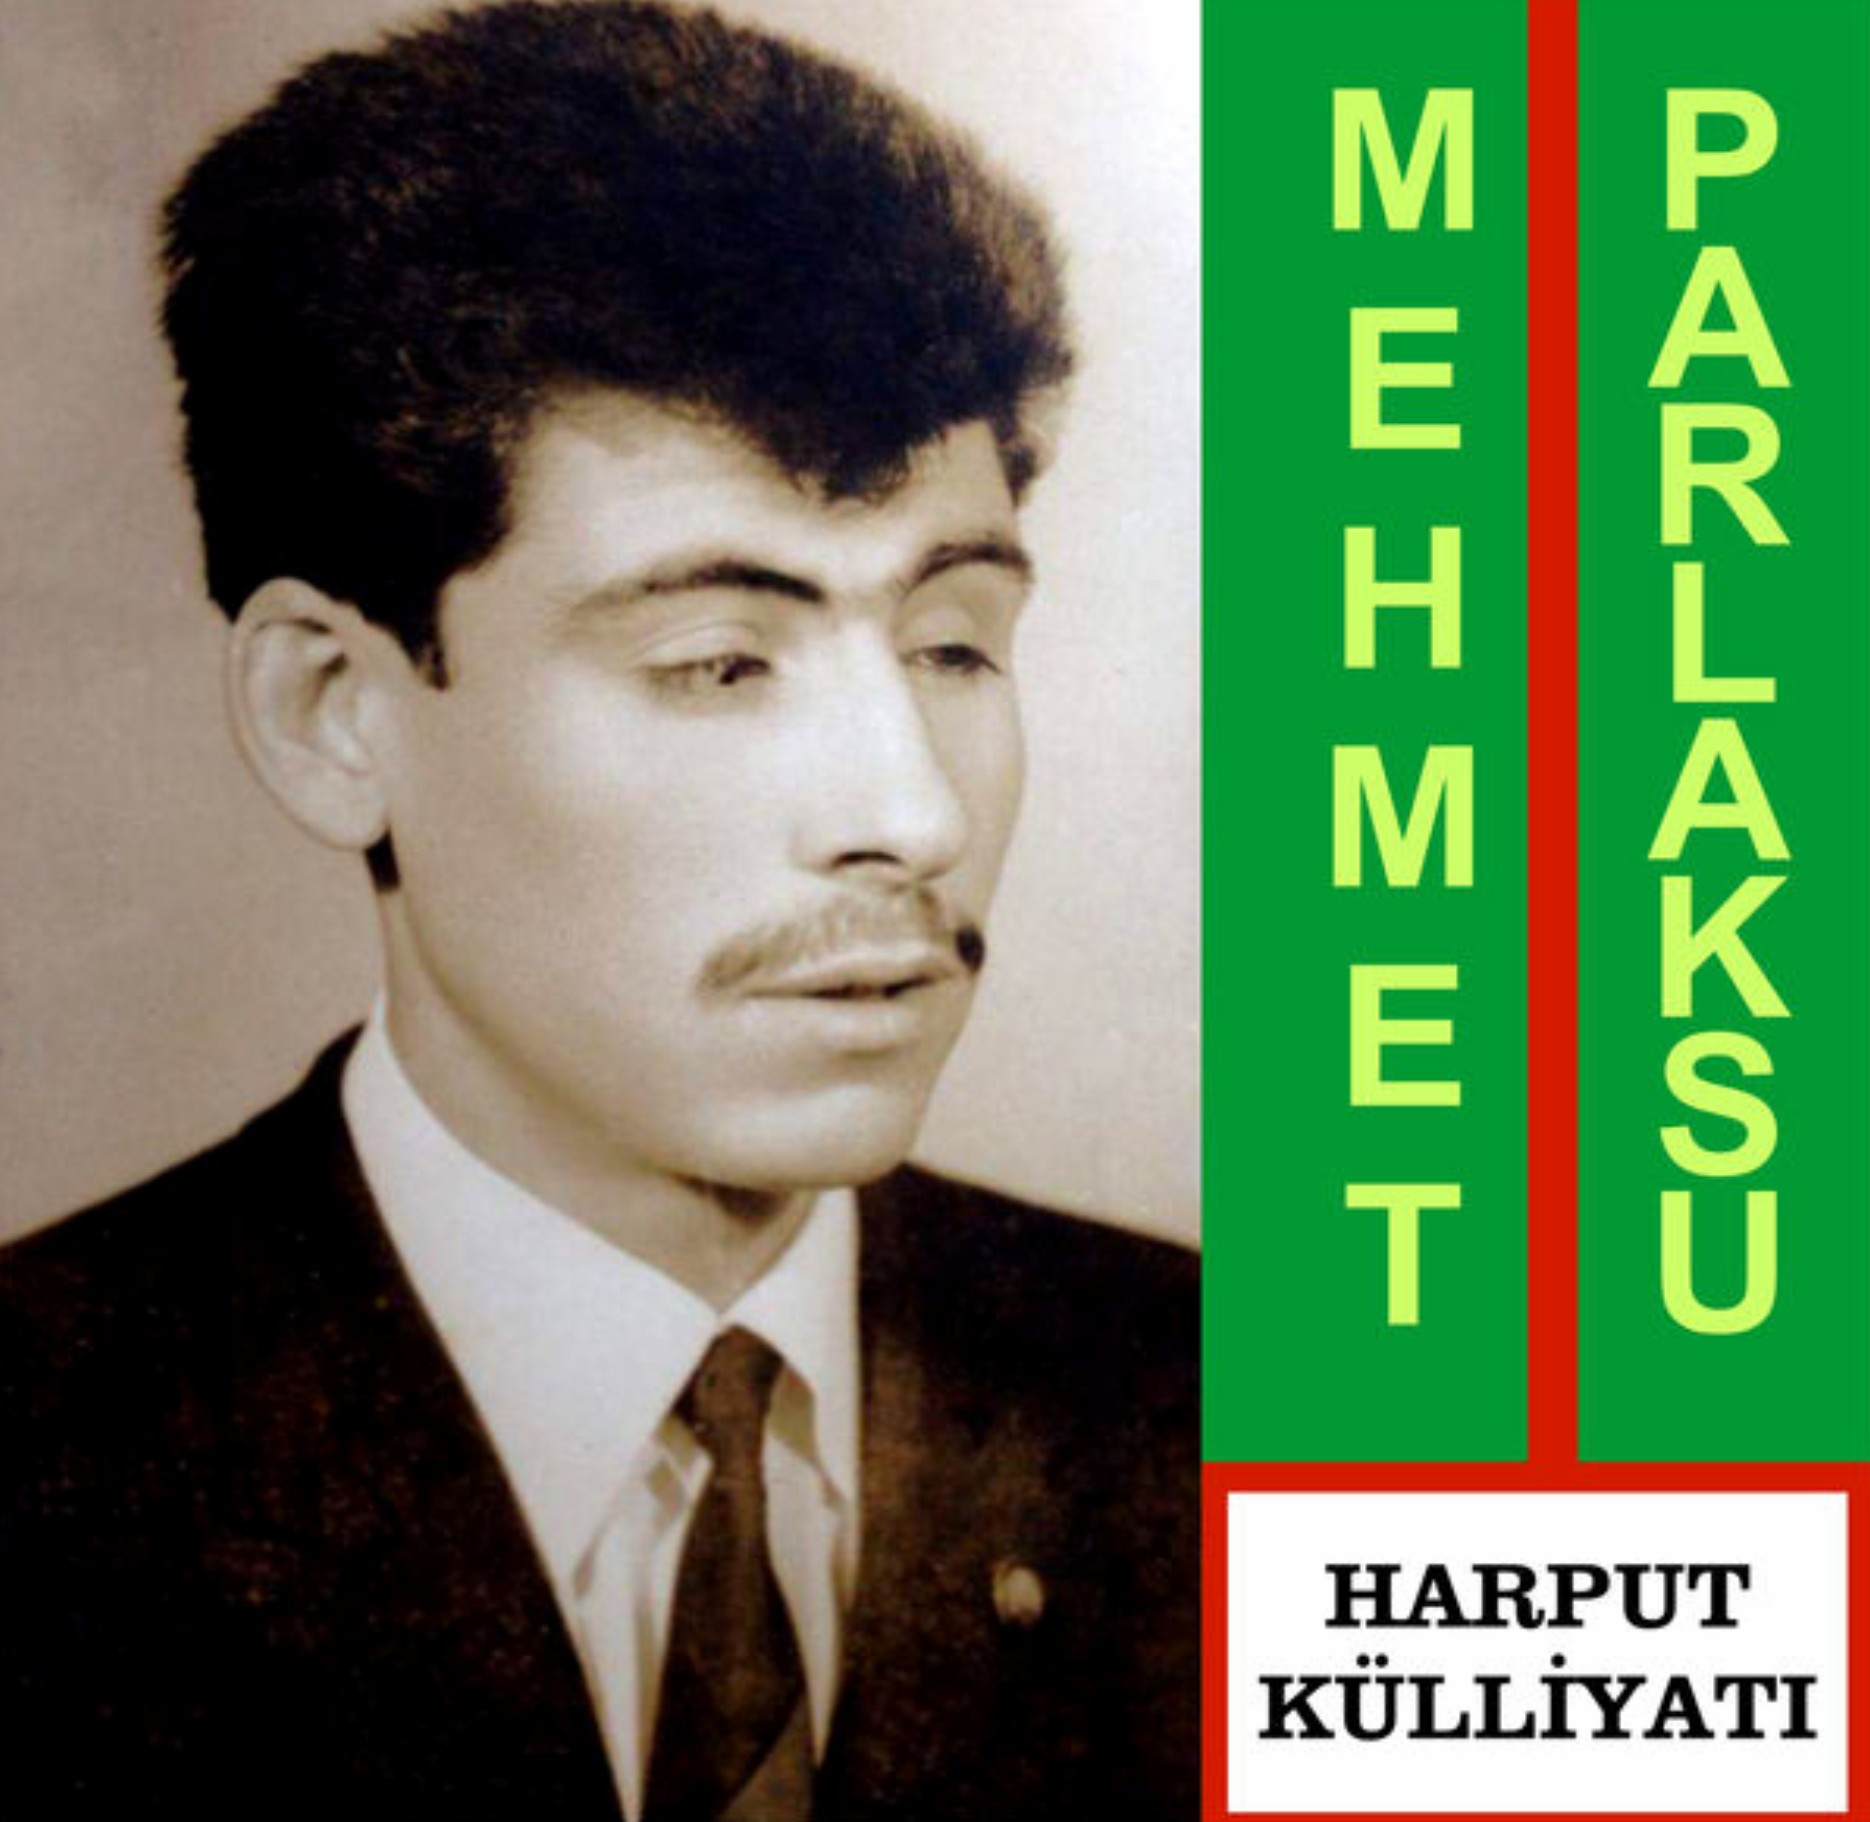 Mehmet Parlaksu - Harput Külliyati (Yalcin Plak) 1